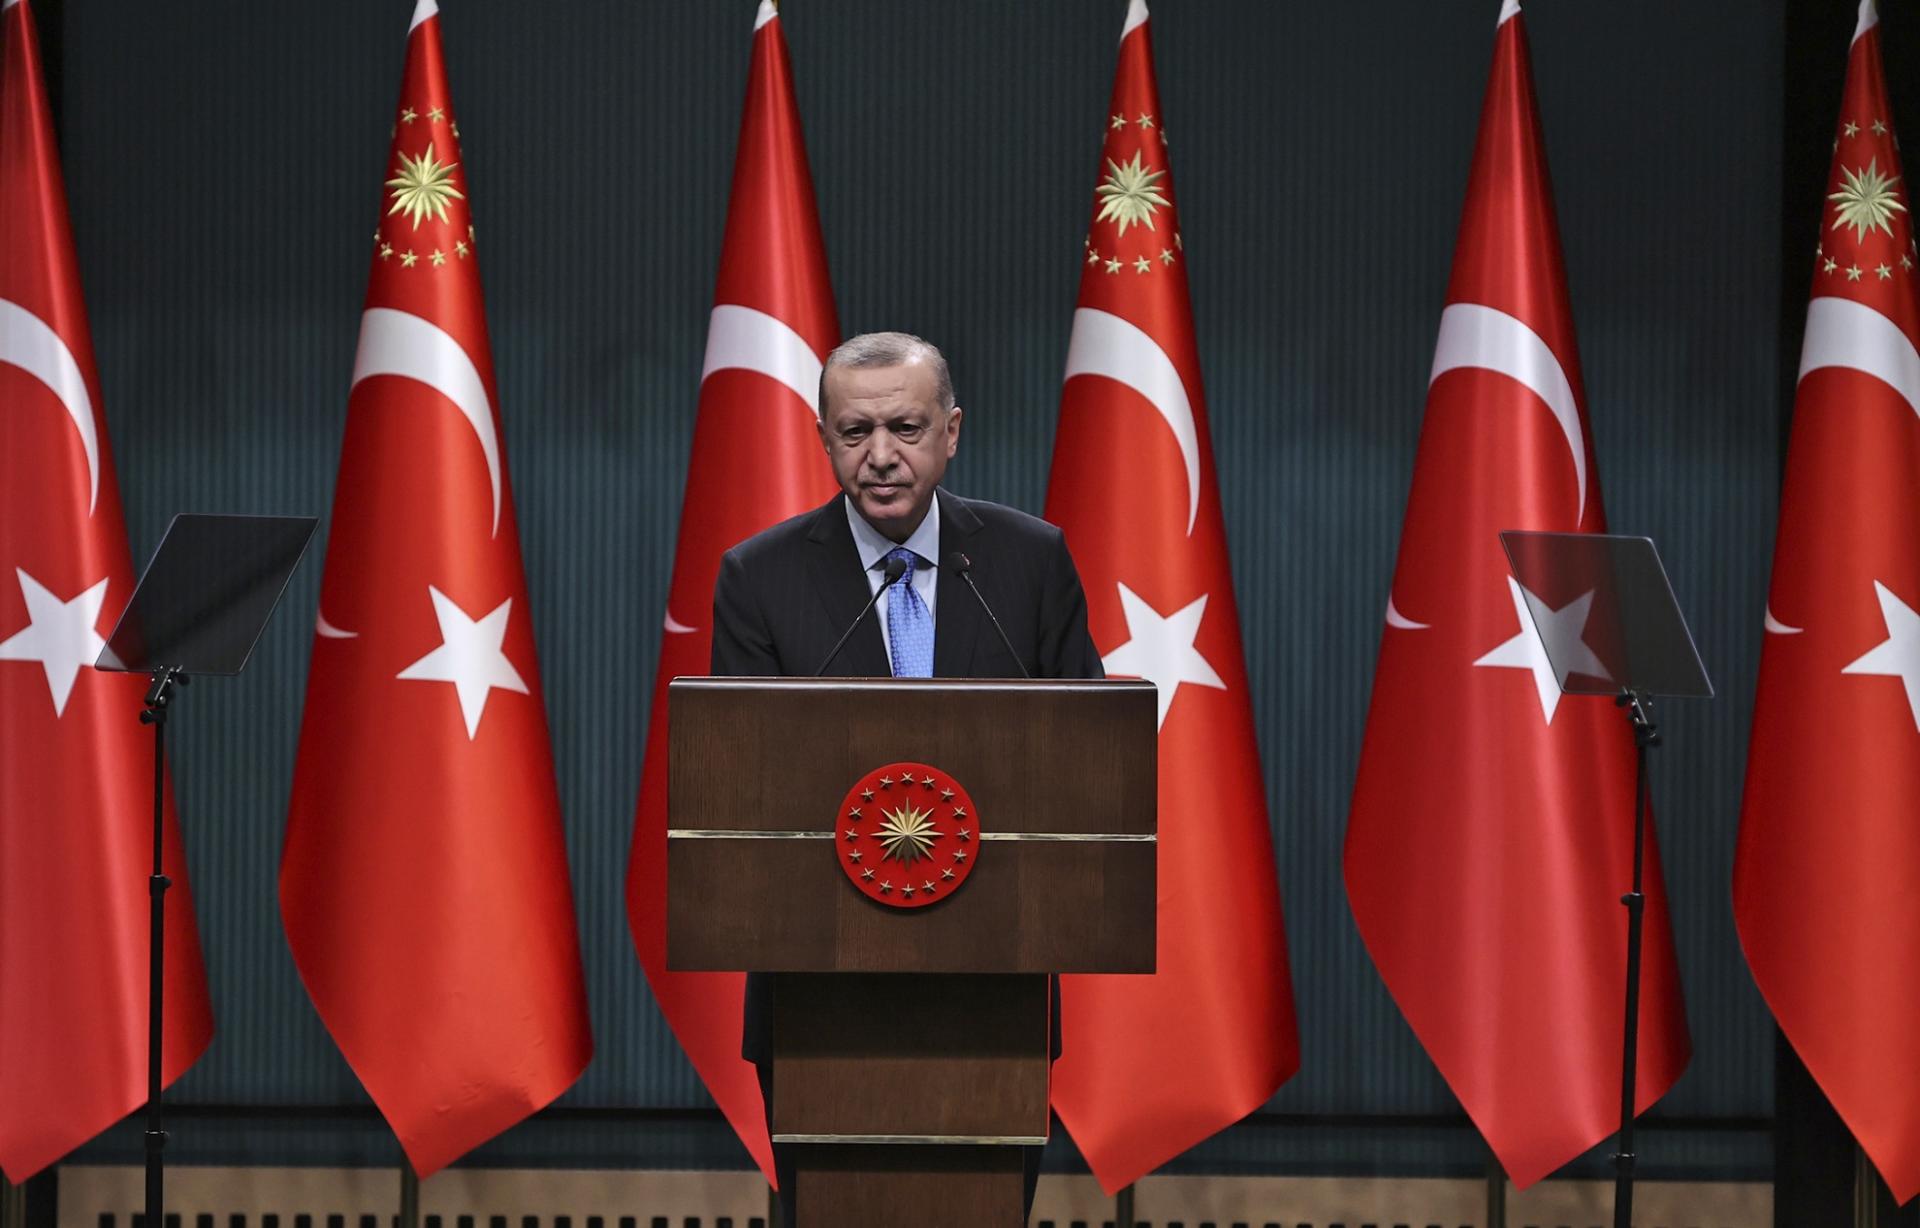 فراخوان اردوغان از تمامی احزاب سیاسی برای مشارکت در تدوین قانون اساسی جدید